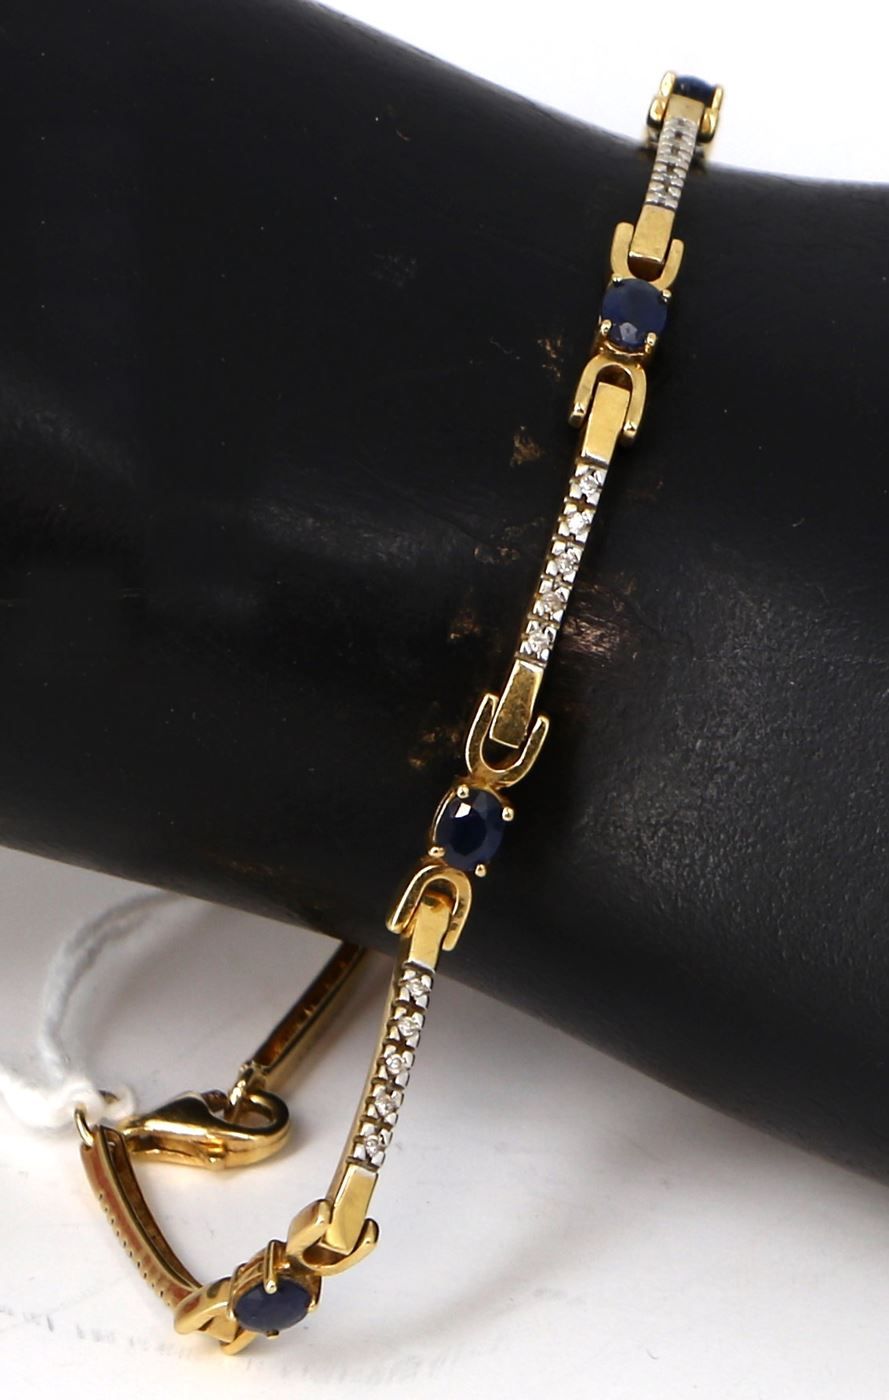 Null 第750号黄金线条手镯，镶嵌6颗椭圆形蓝宝石和小钻石，长18厘米。毛重 7,40 grs